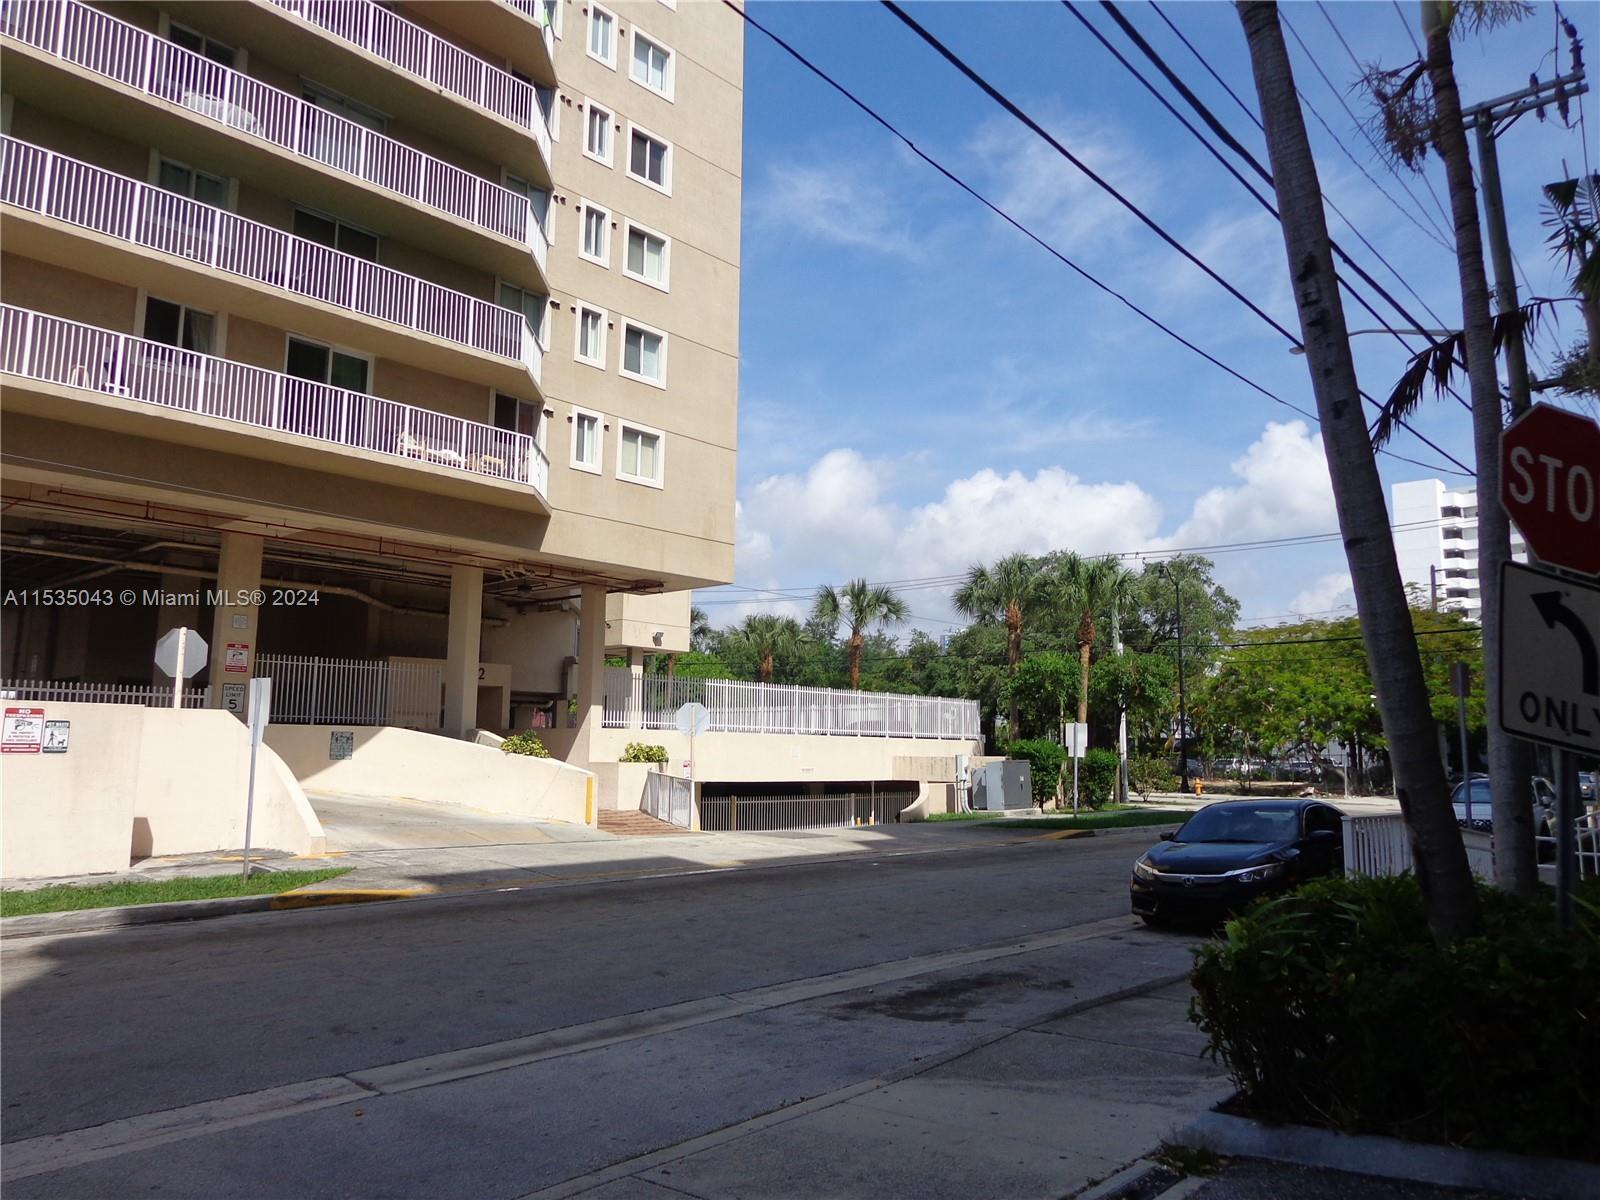 Photo of 102 SW 6th Ave #502 in Miami, FL